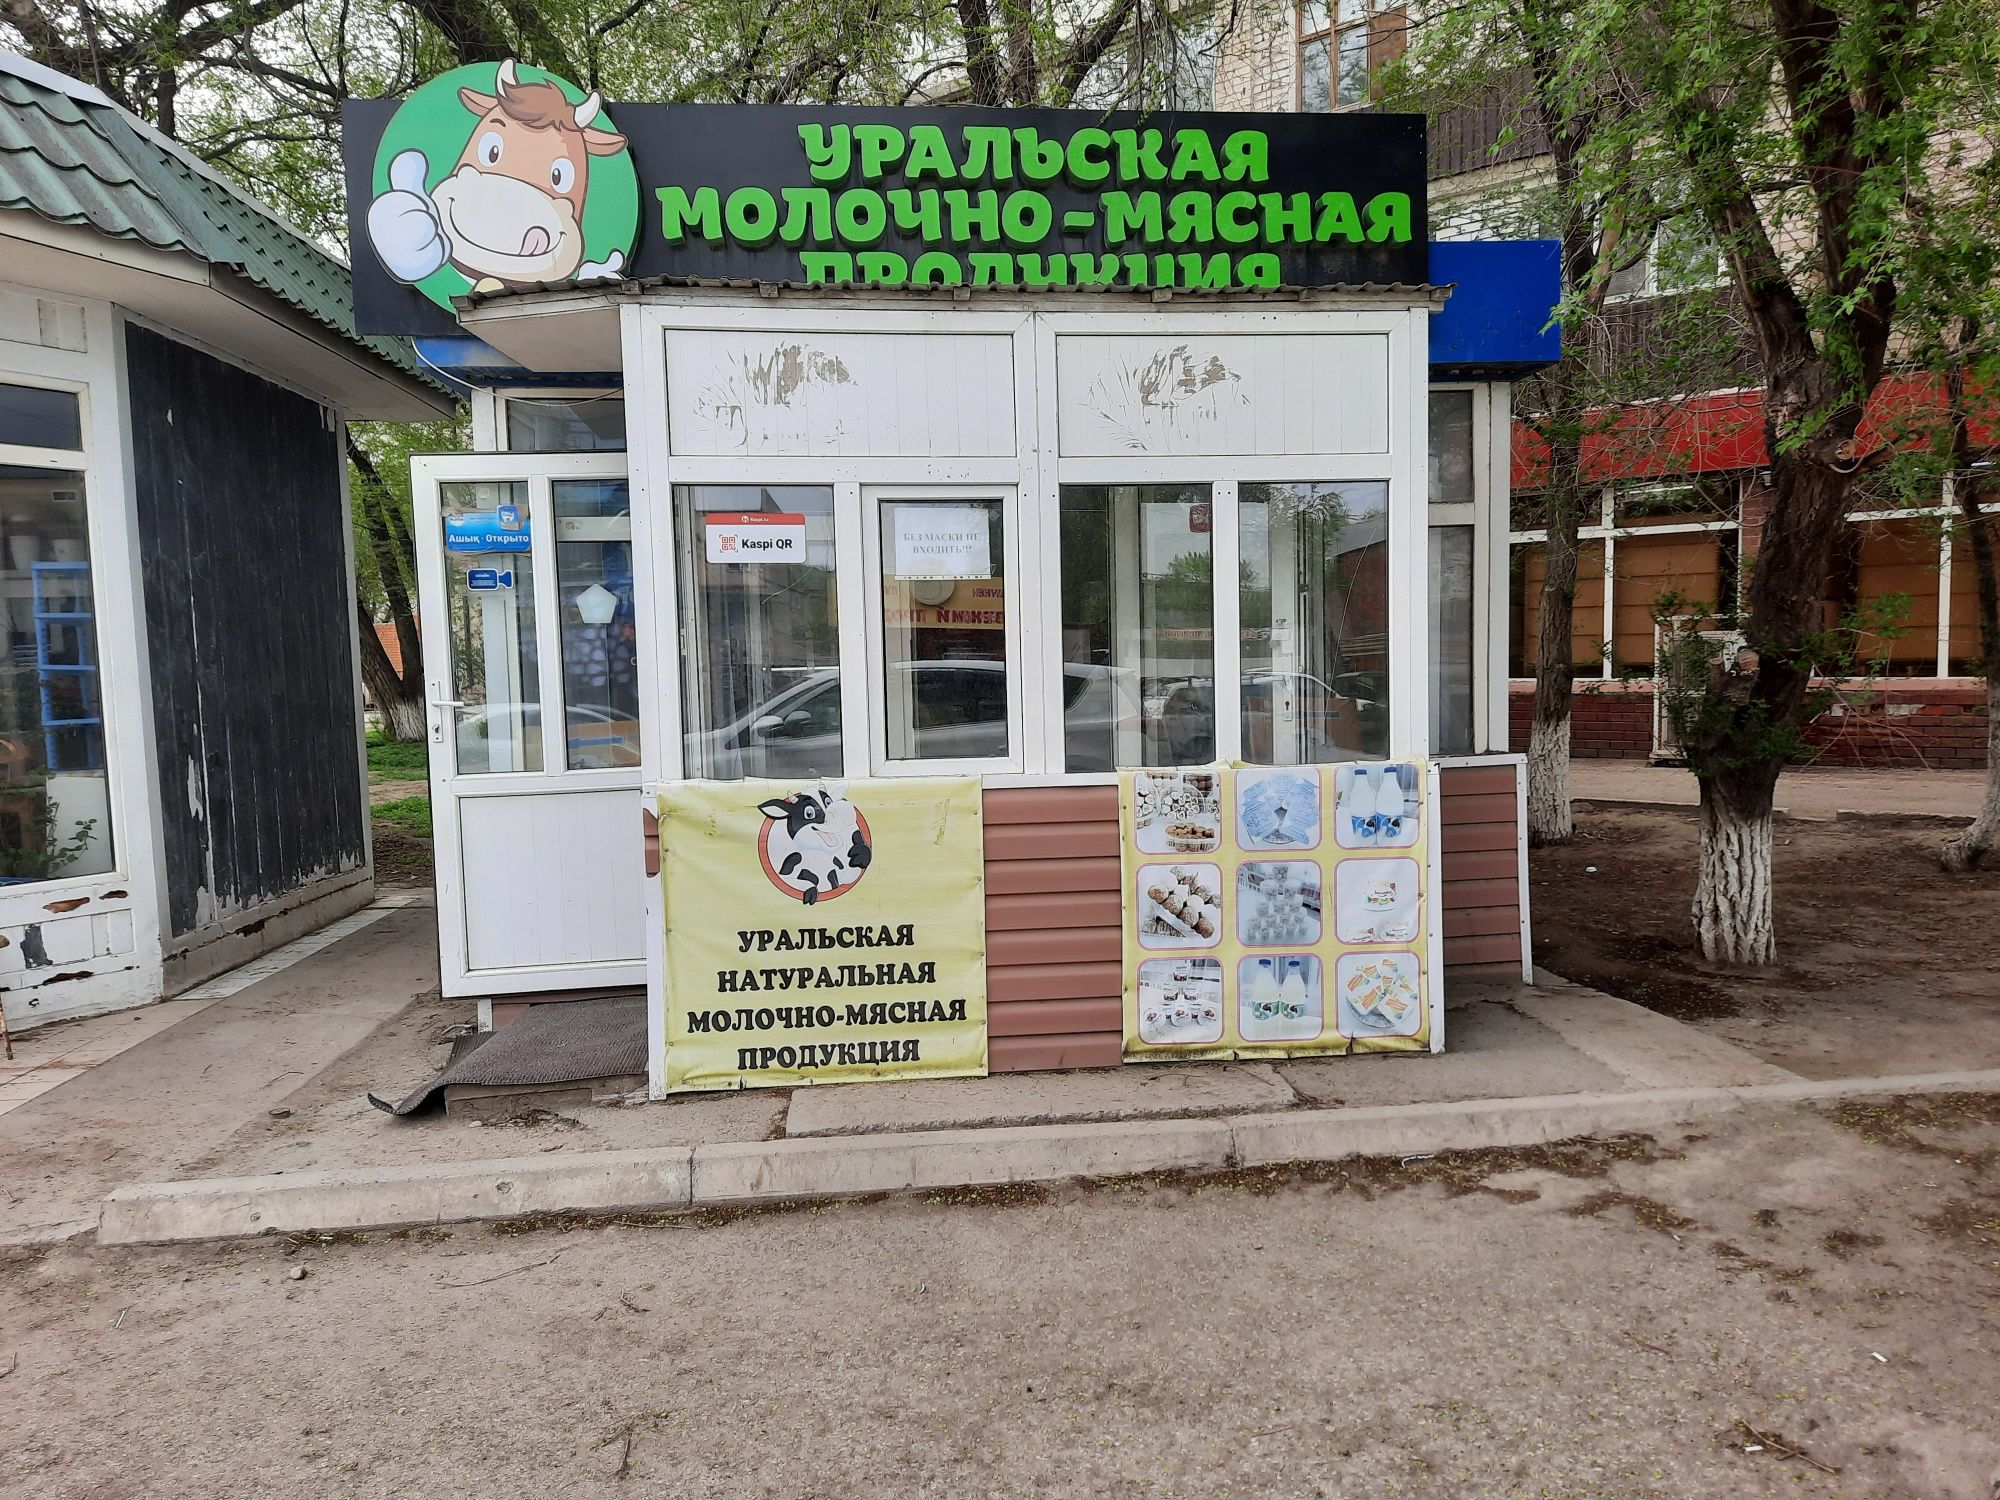 Уральская молочная-мясная продукция ждет вас в ассортименте,Сметана